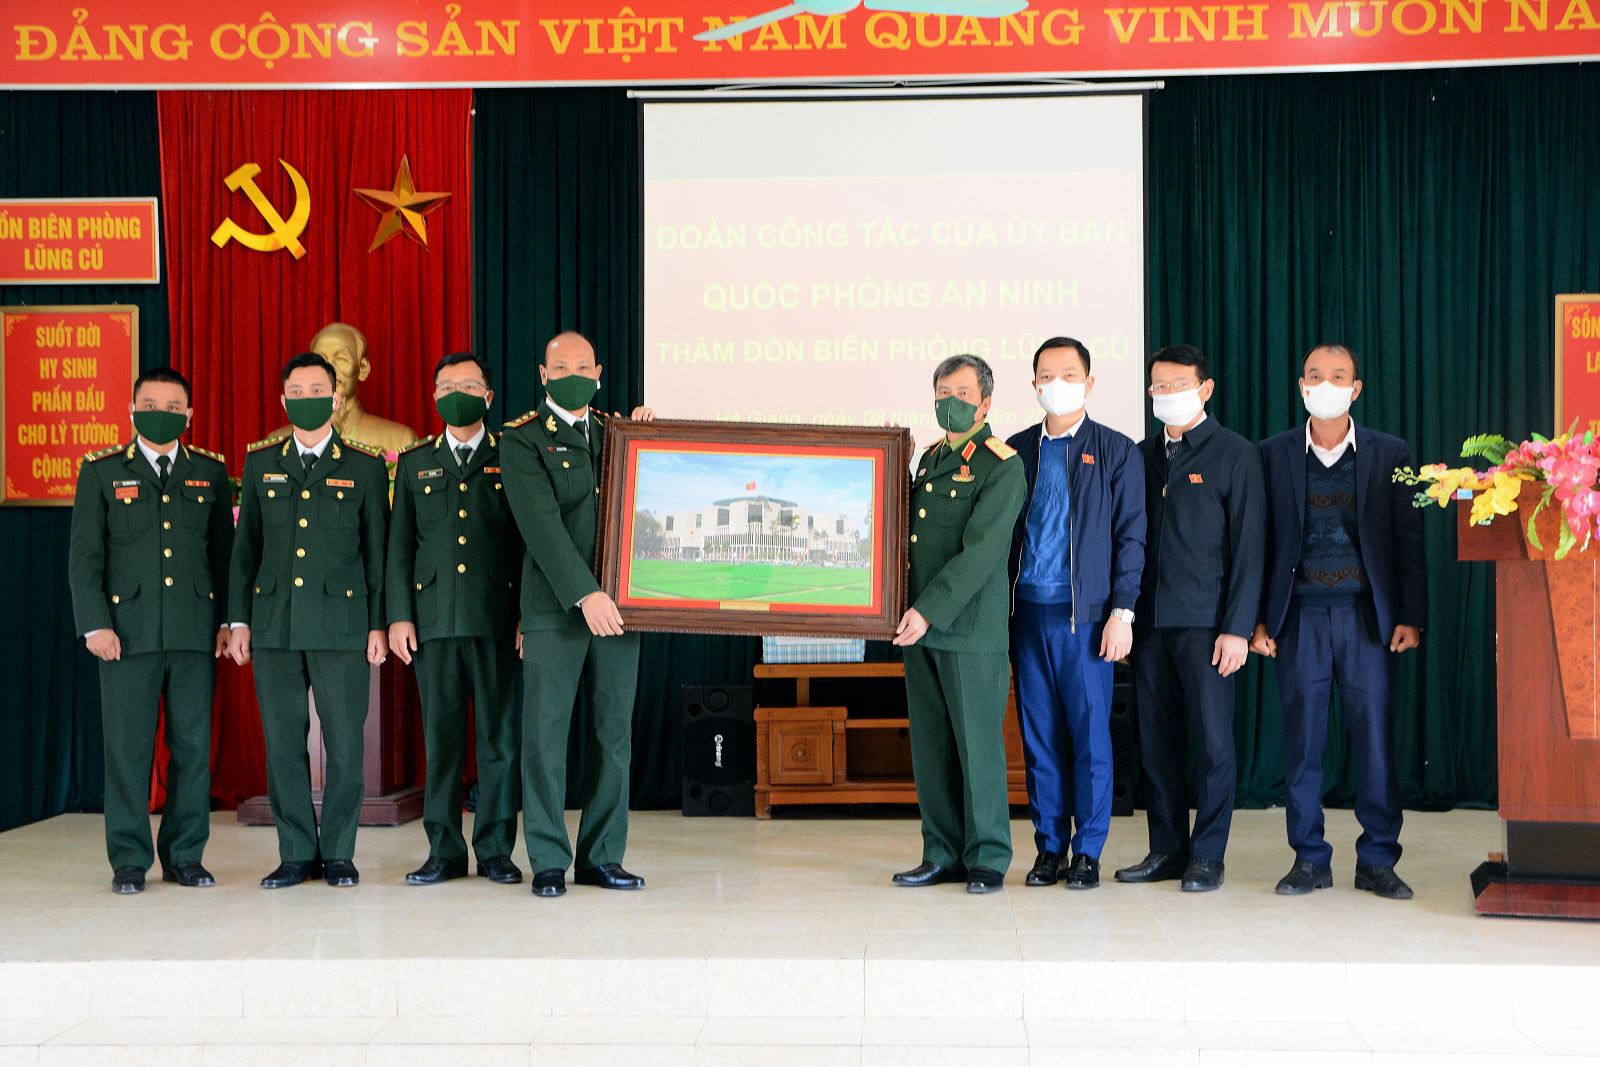 Đoàn trao tặng cho Đồn Biên phòng Lúng Cú bức tranh Nhà Quốc hội